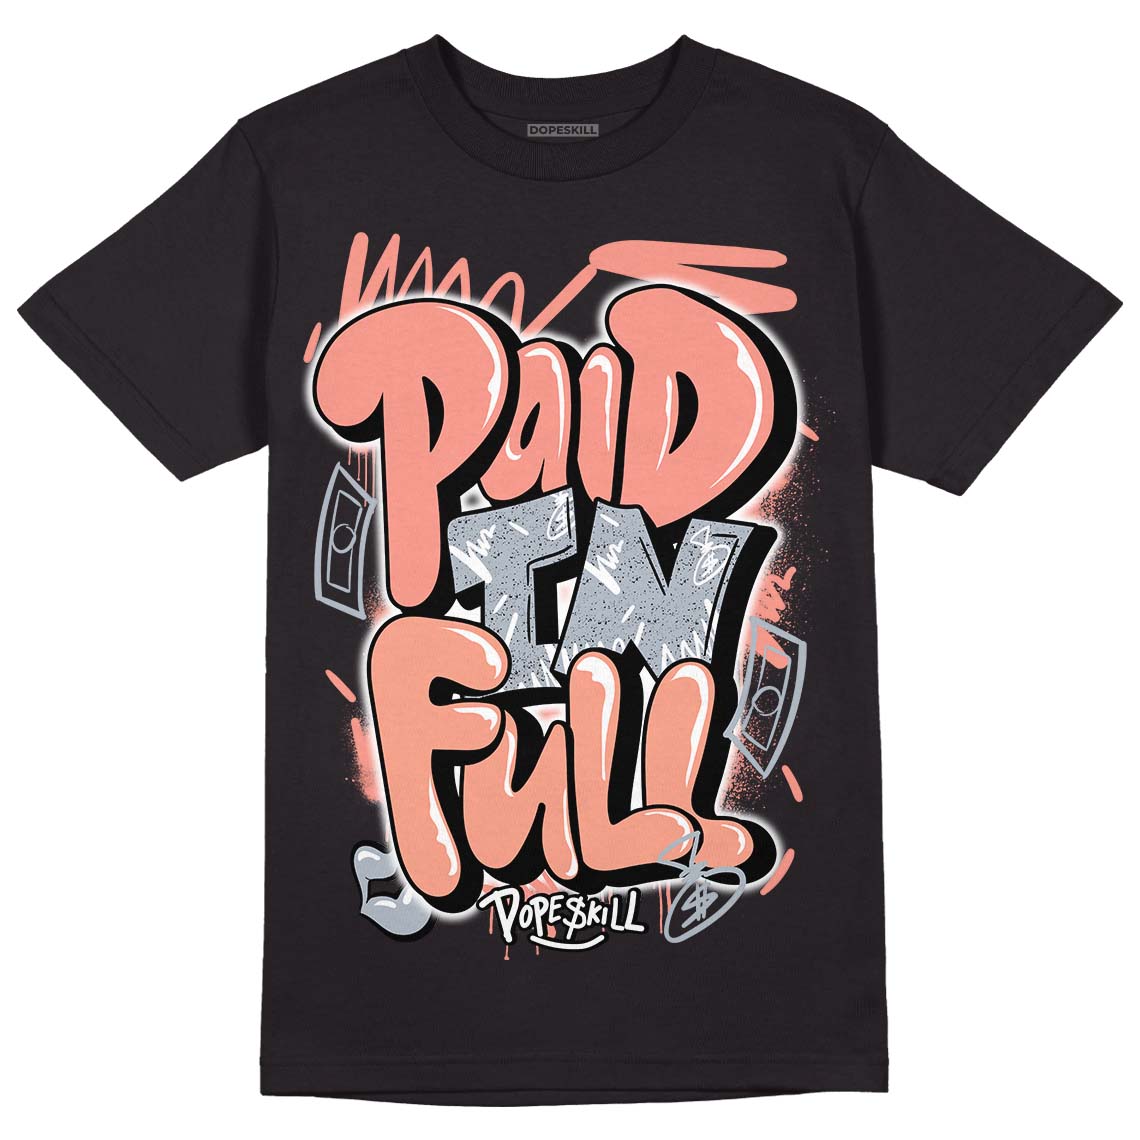 DJ Khaled x Jordan 5 Retro ‘Crimson Bliss’ DopeSkill T-Shirt New Paid In Full Graphic Streetwear - Black 